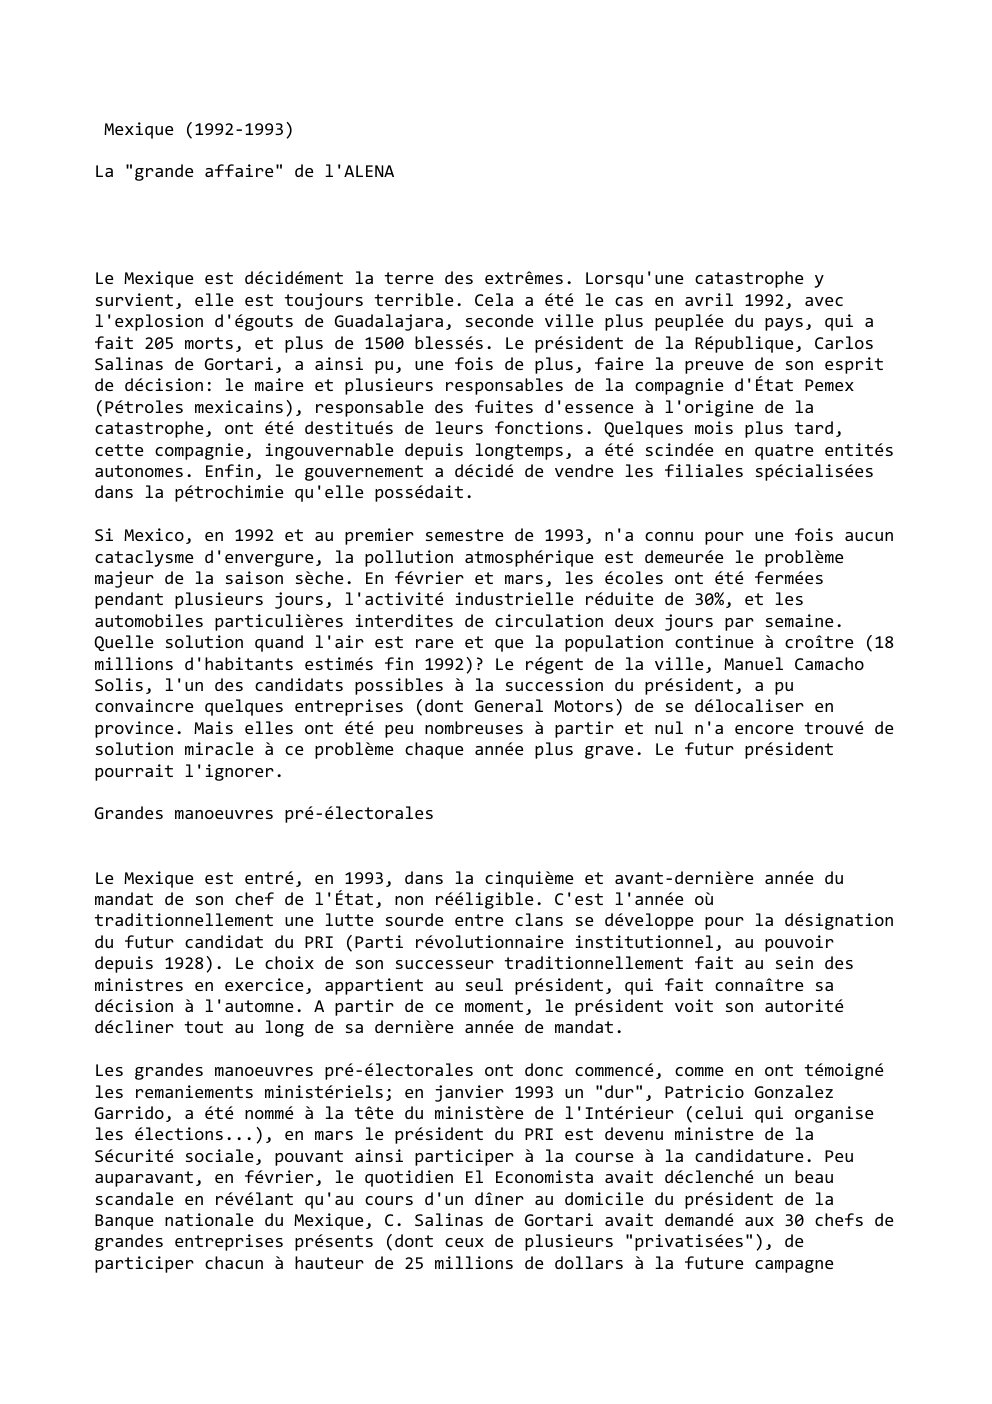 Prévisualisation du document Mexique (1992-1993)
La "grande affaire" de l'ALENA

Le Mexique est décidément la terre des extrêmes. Lorsqu'une catastrophe y
survient, elle...